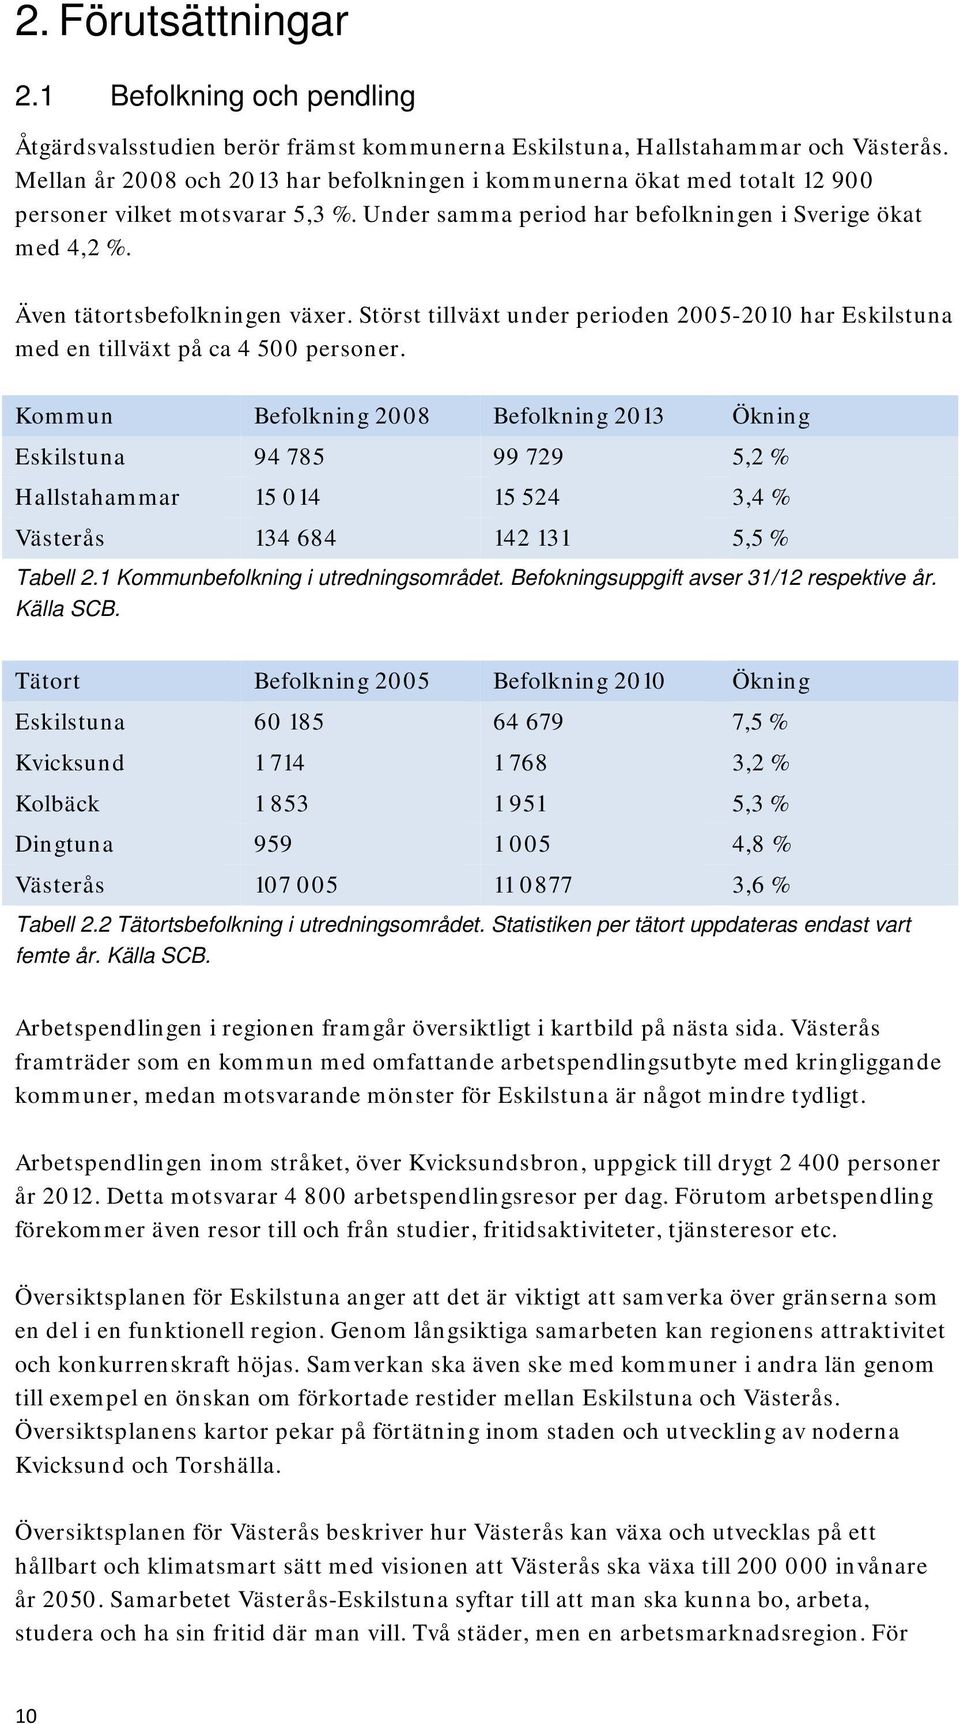 Även tätortsbefolkningen växer. Störst tillväxt under perioden 2005-2010 har Eskilstuna med en tillväxt på ca 4 500 personer.